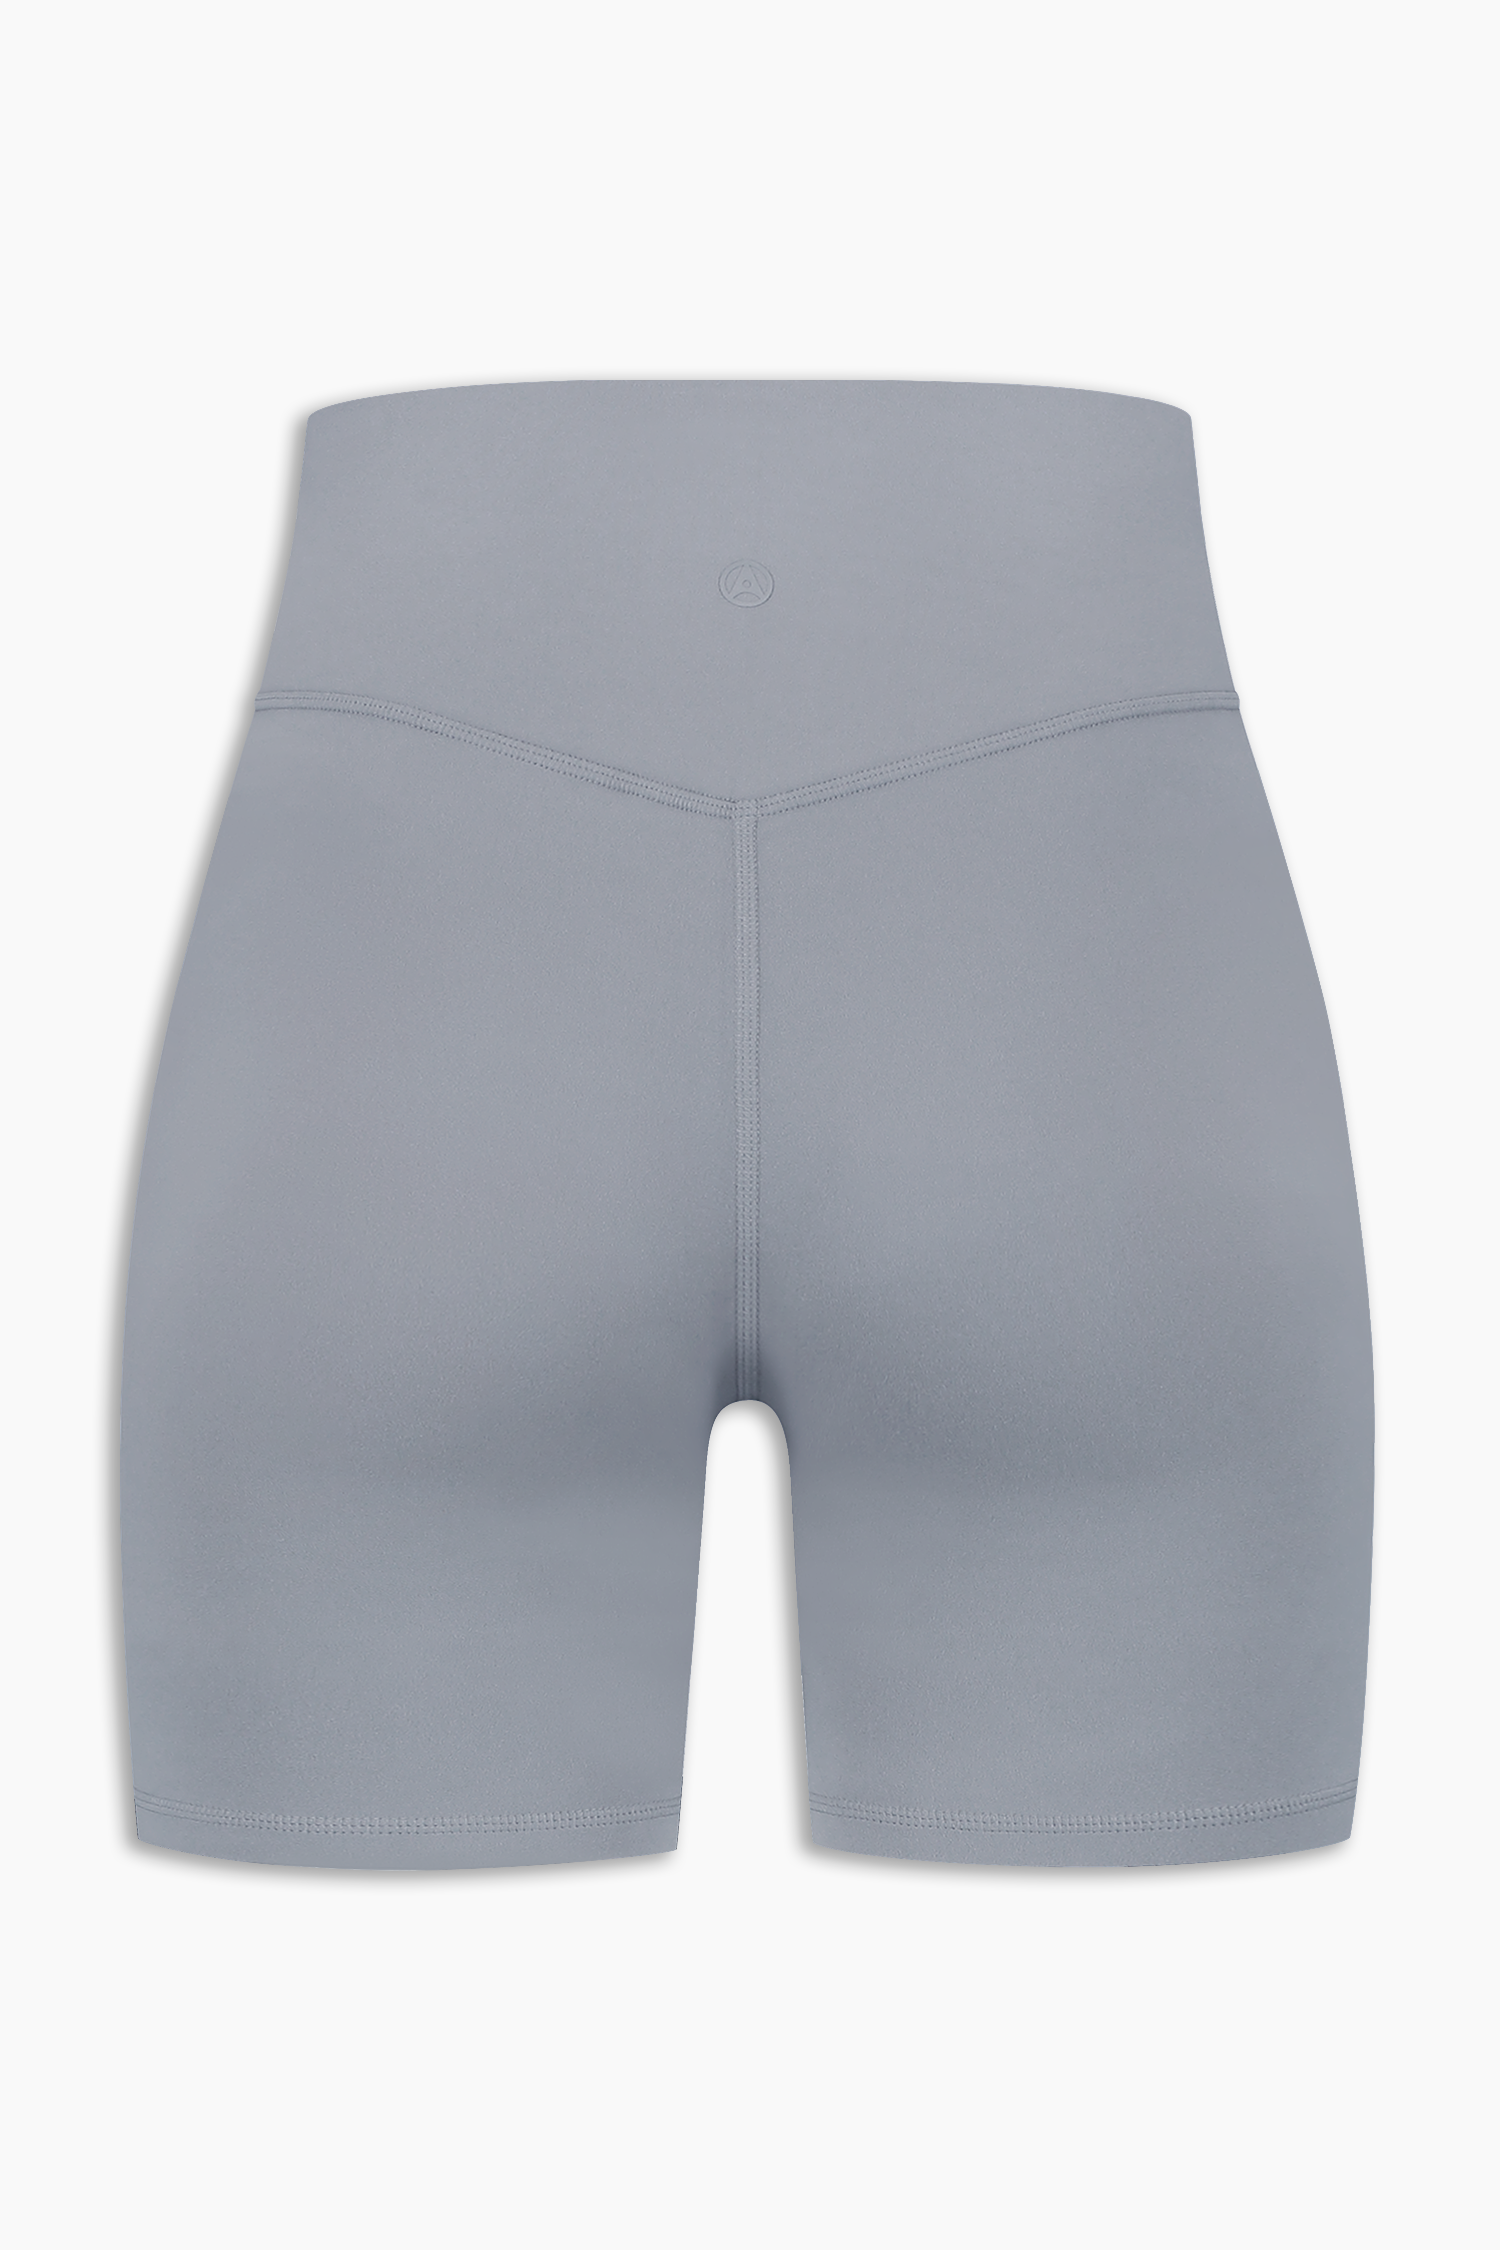 Shorts Graphite 6.5"